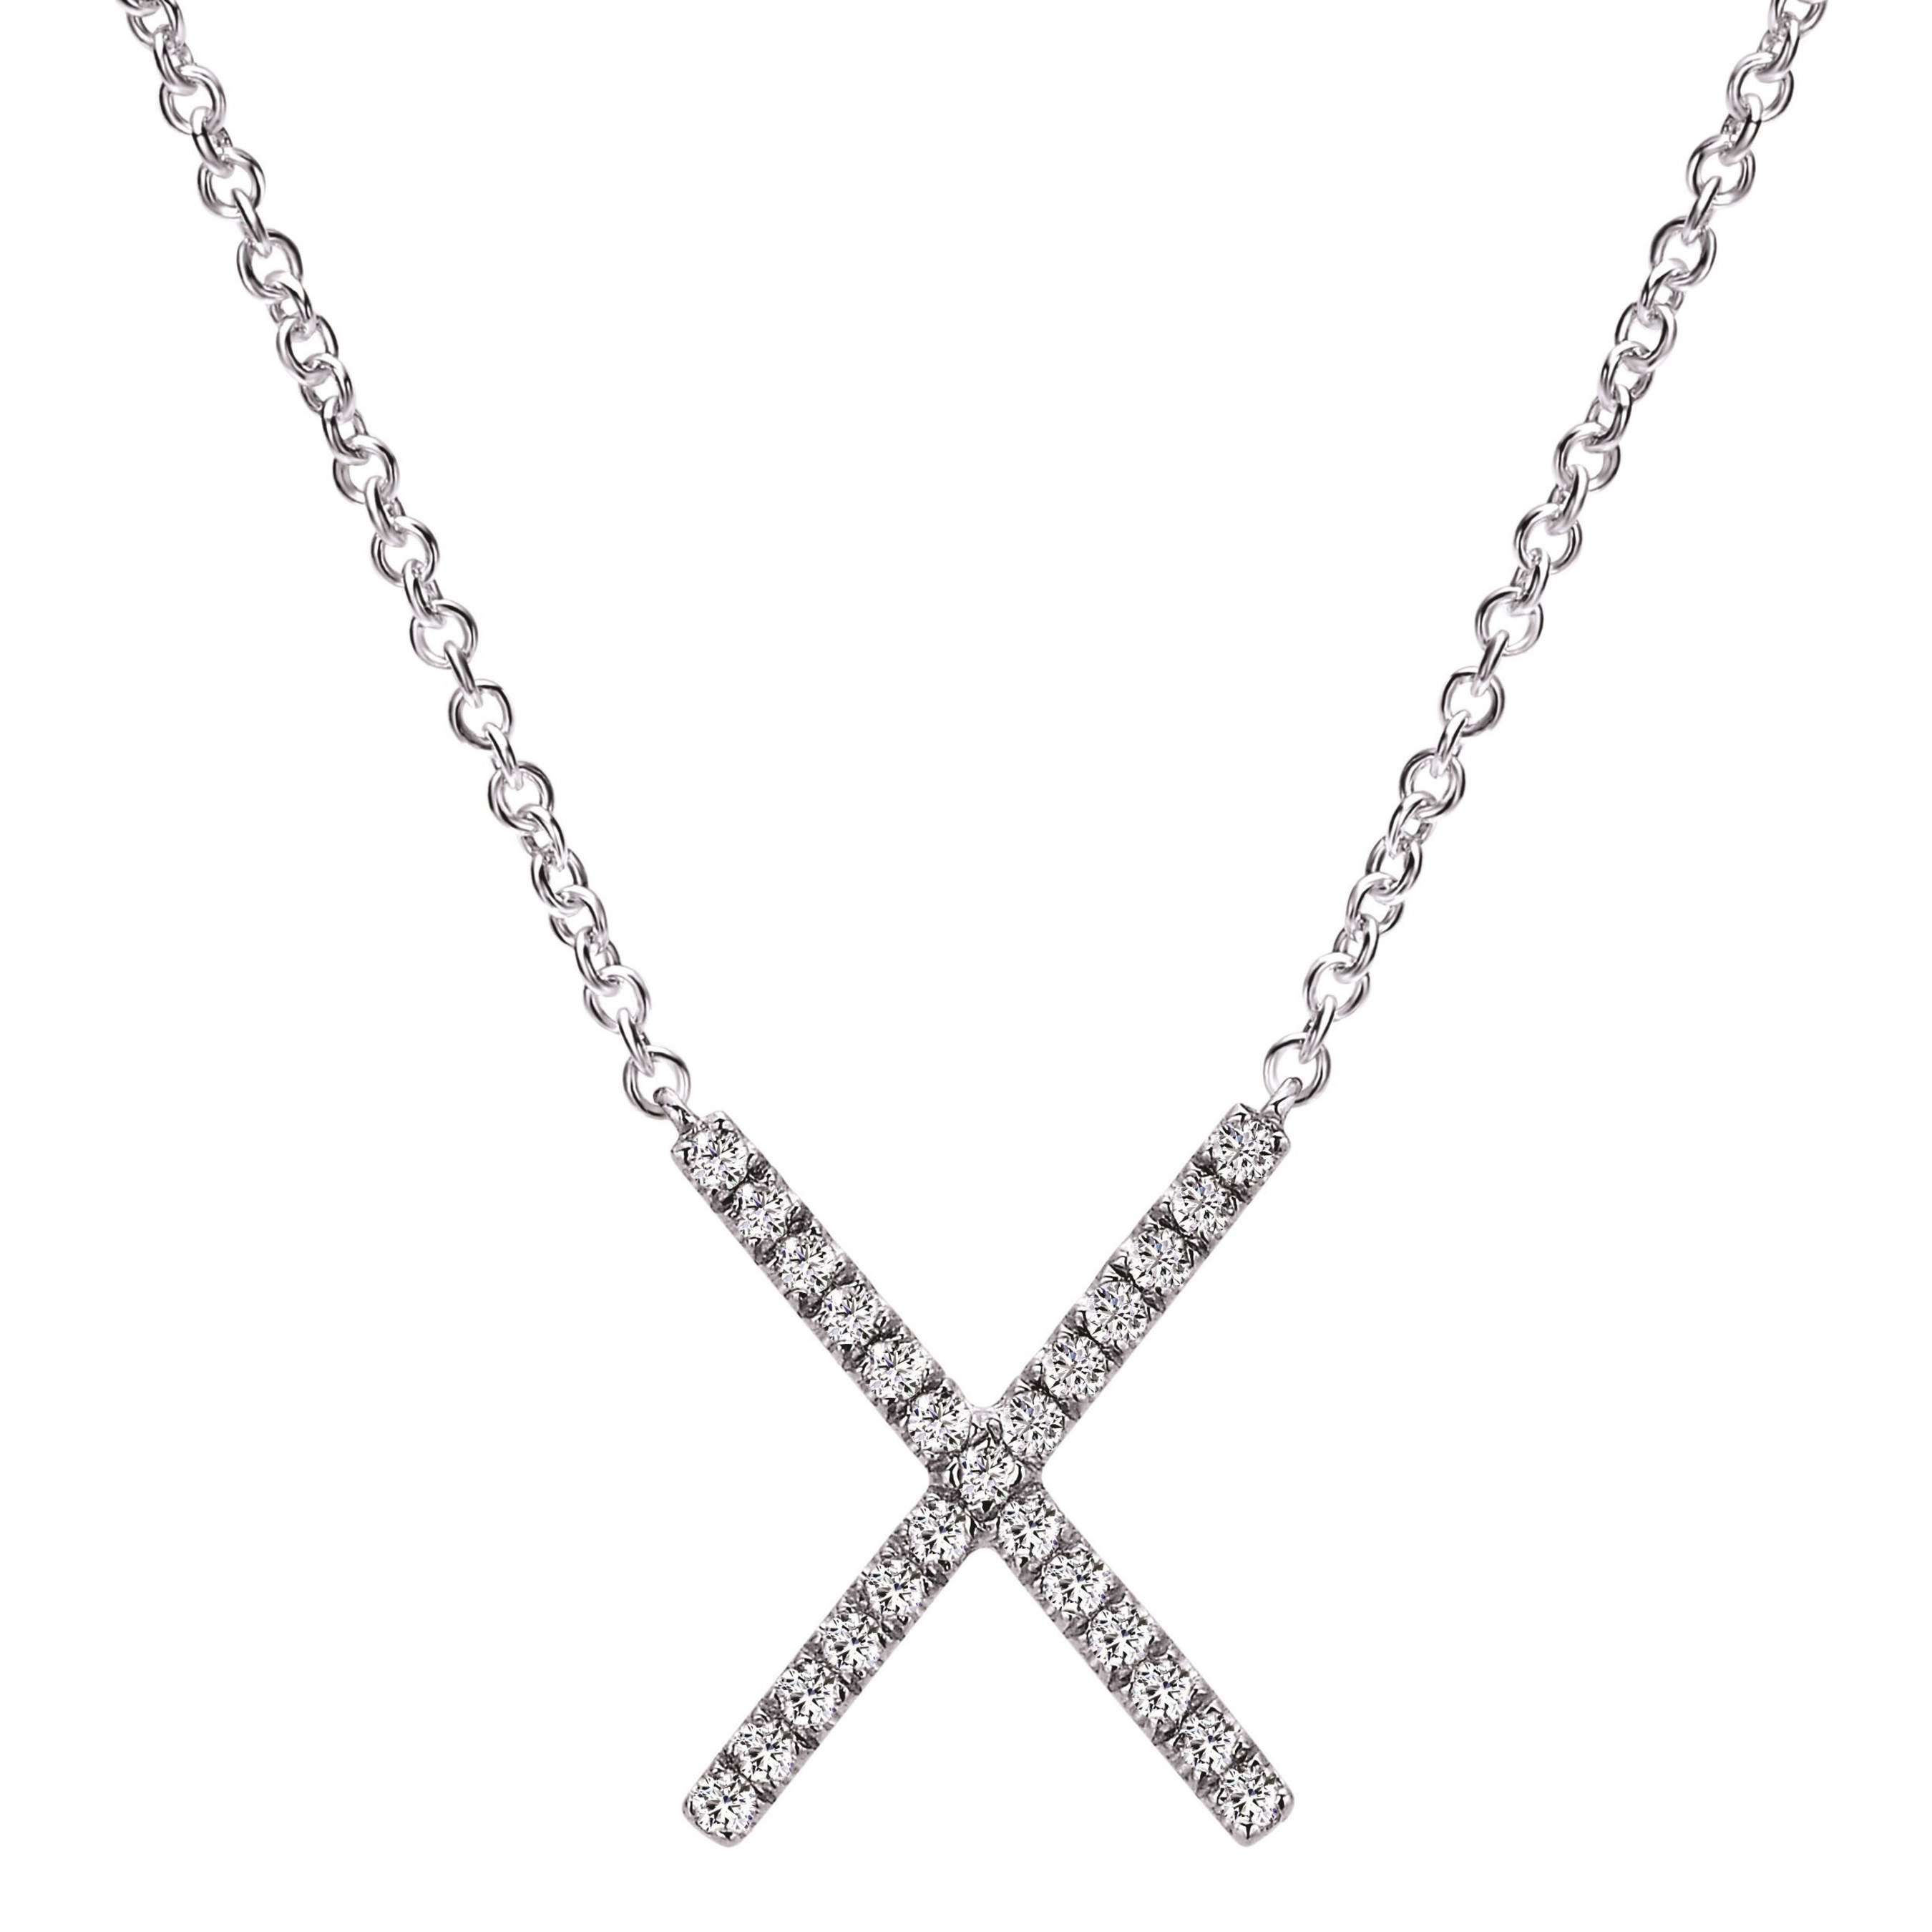 Gabriel & Co.'s "X" Necklace